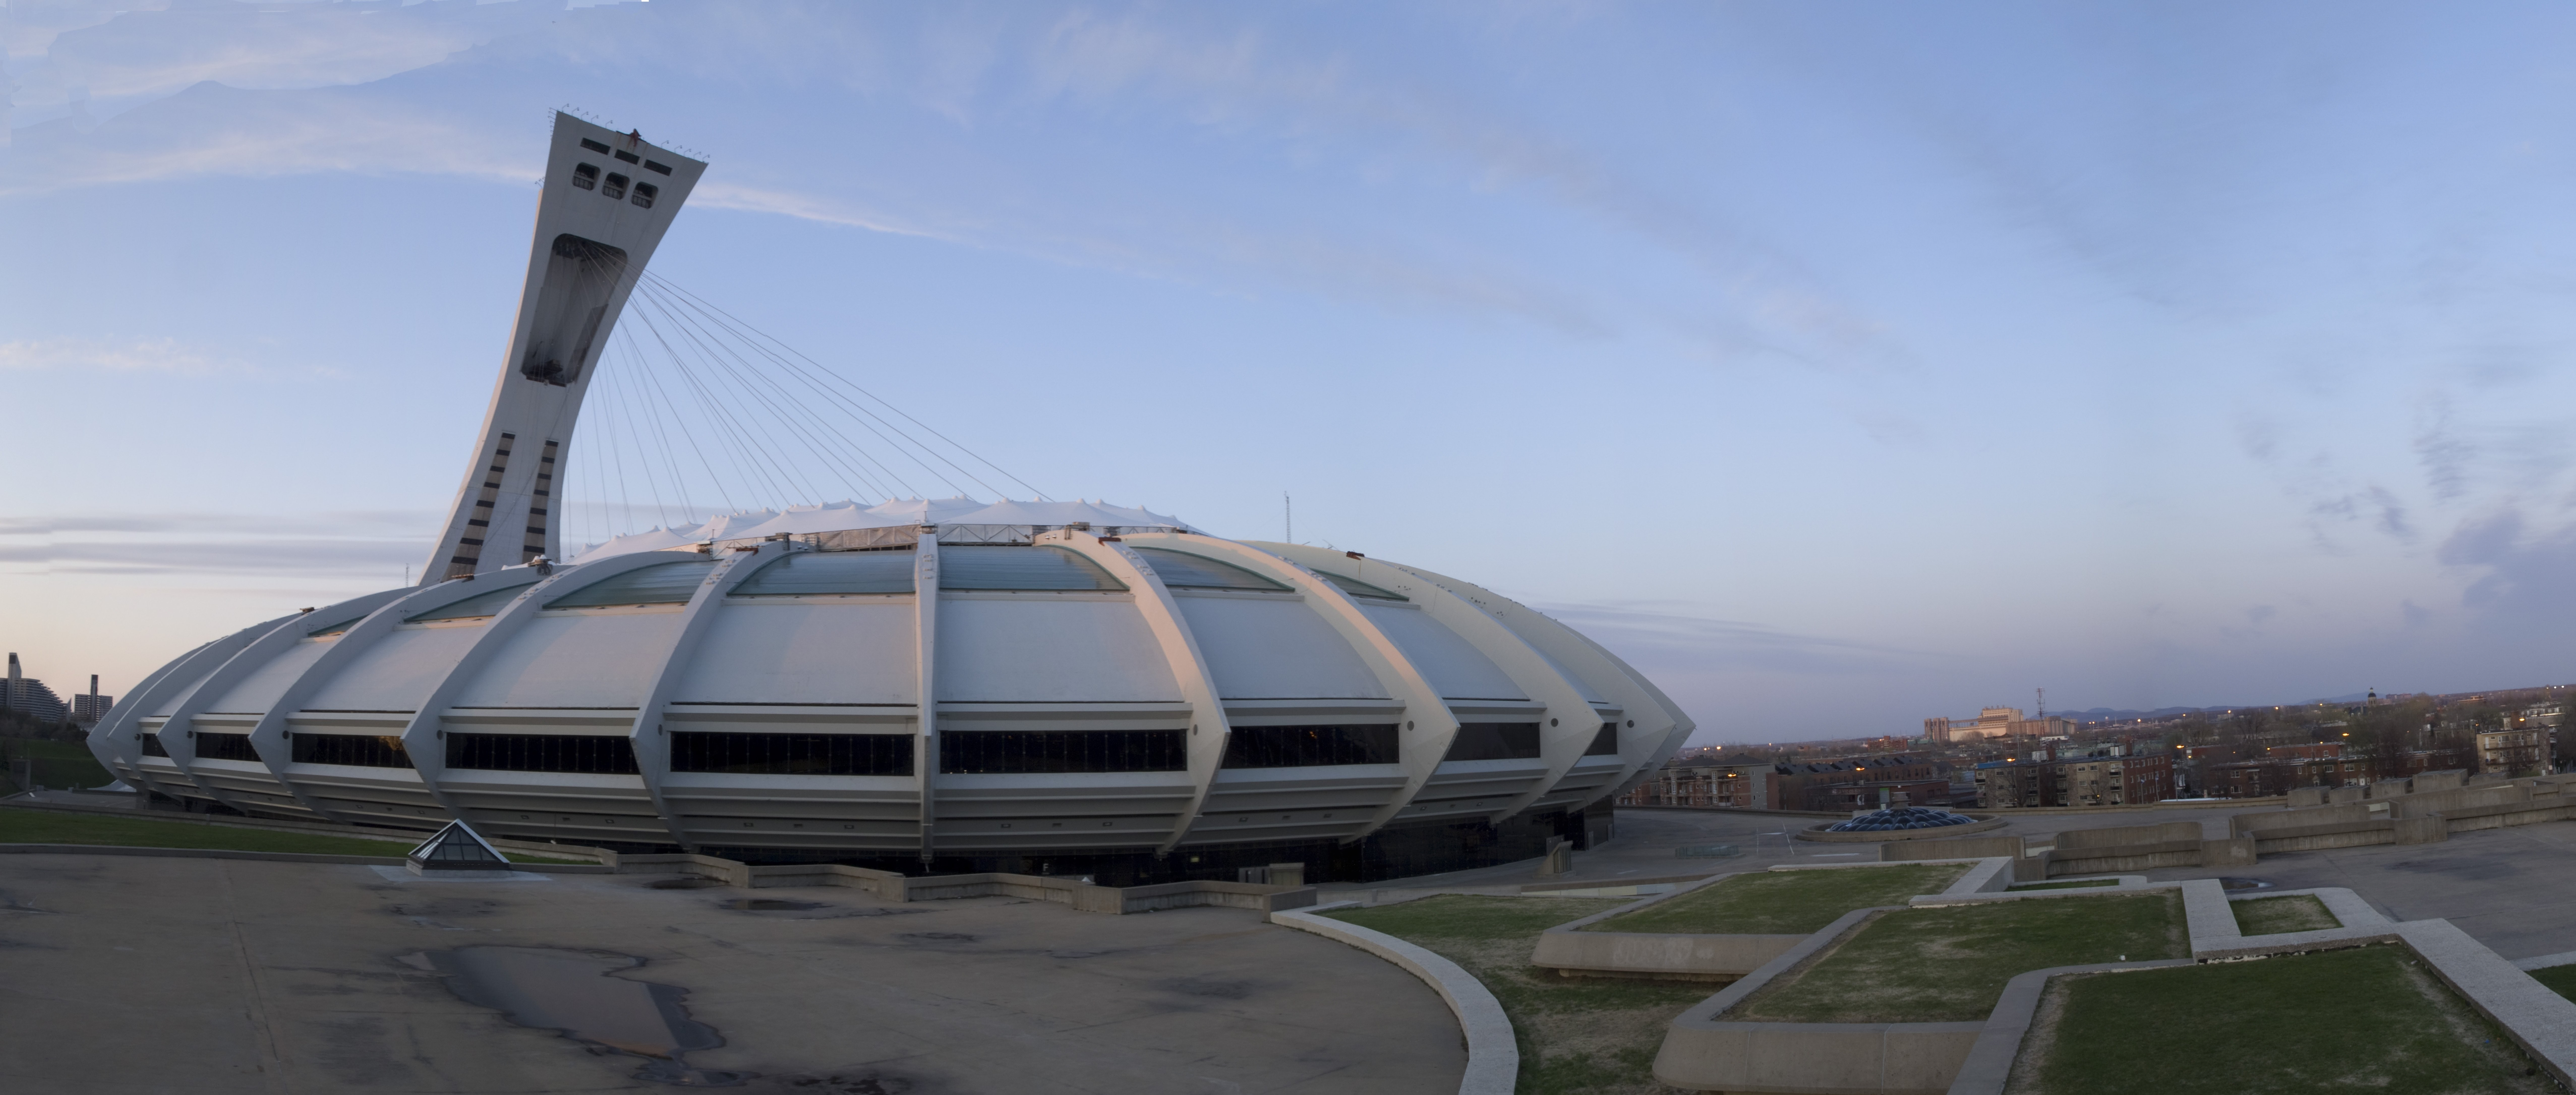 ケベックオリンピックスタジアムの写真